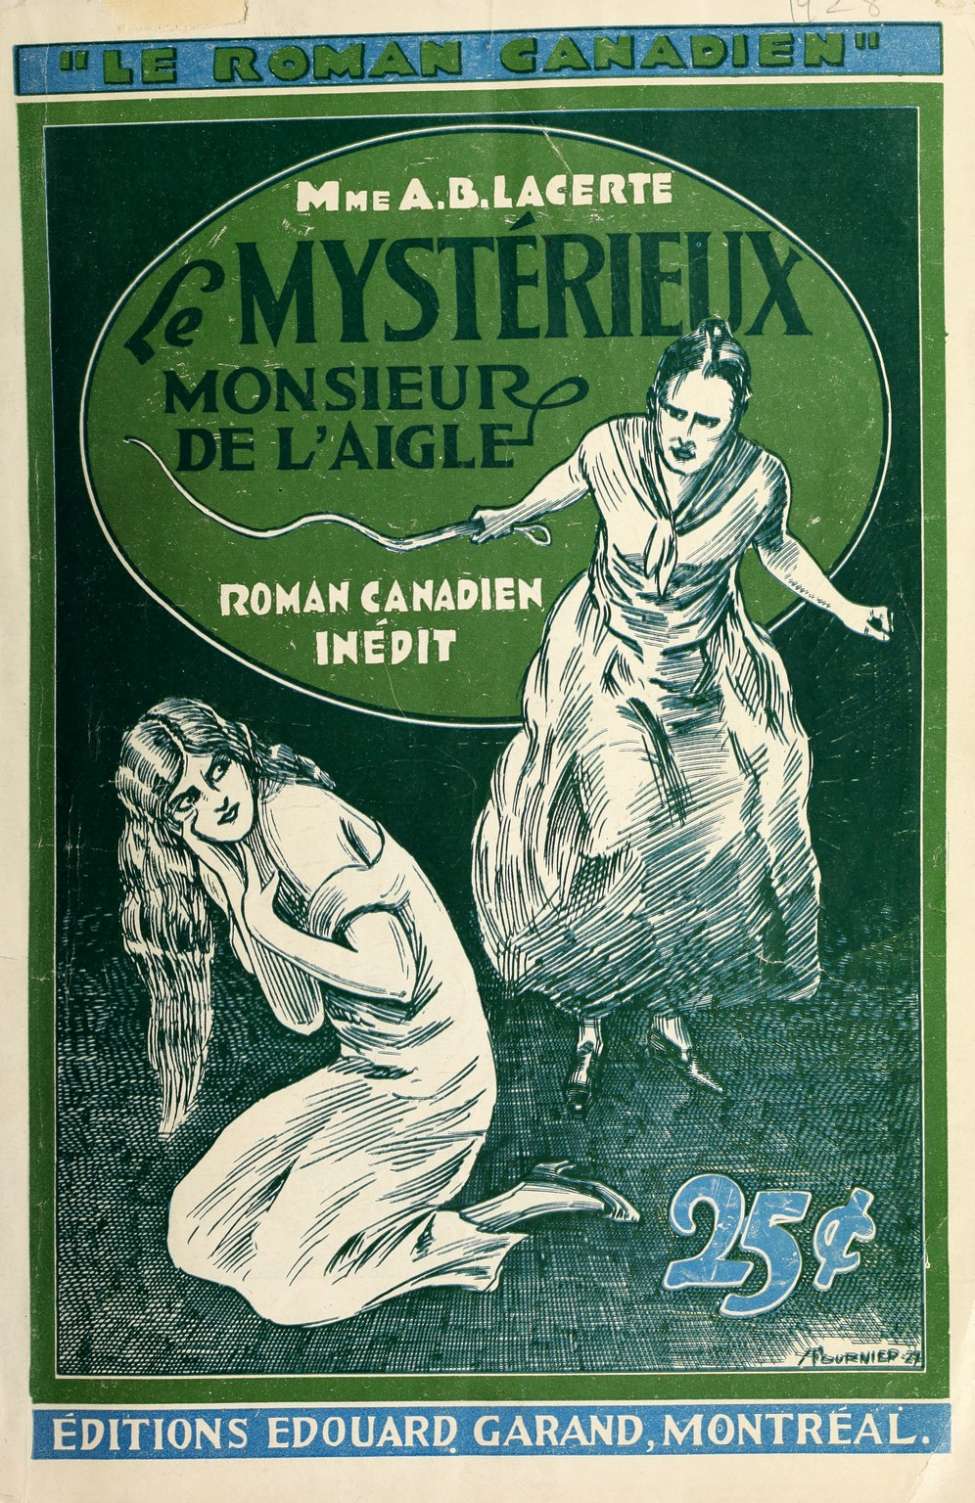 Book Cover For Le Roman Canadien 39 - Le mystérieux Mr. de l’aigle